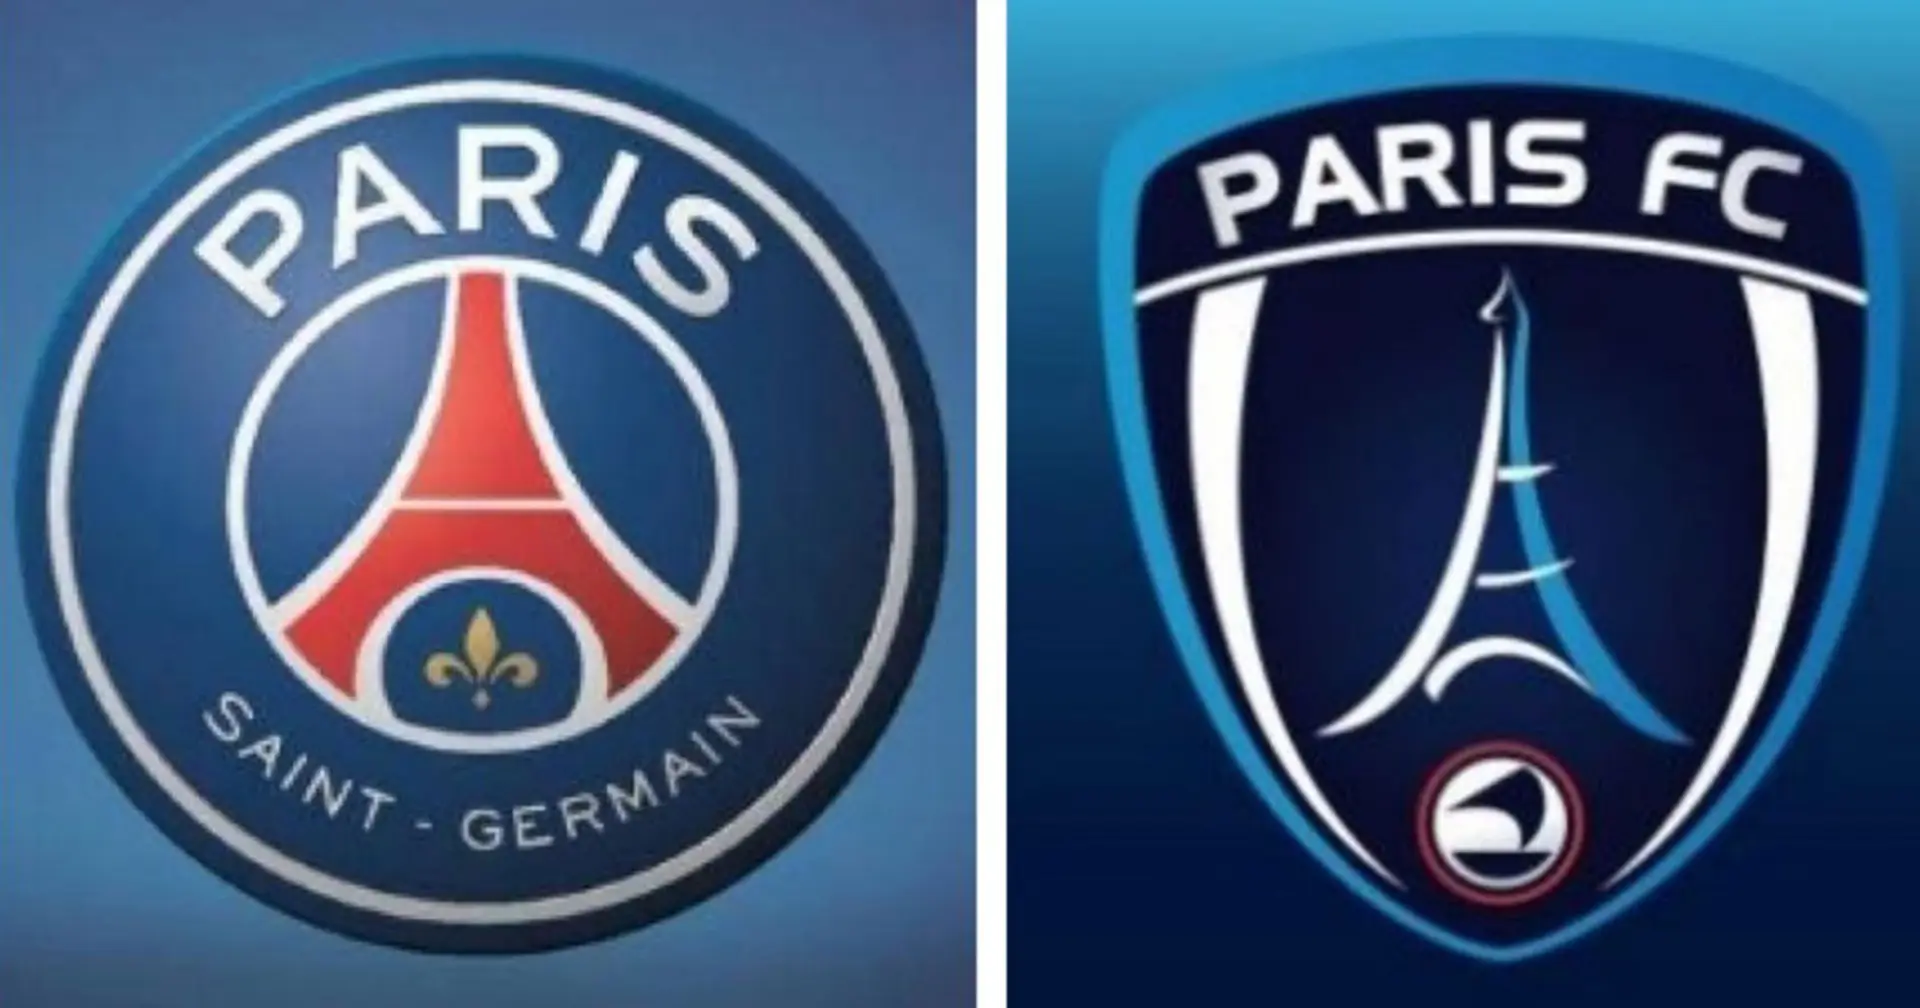 Paris FC peut espérer voir grand via le Bahrein! Pourquoi ce serait bénéfique pour le PSG et Paris?